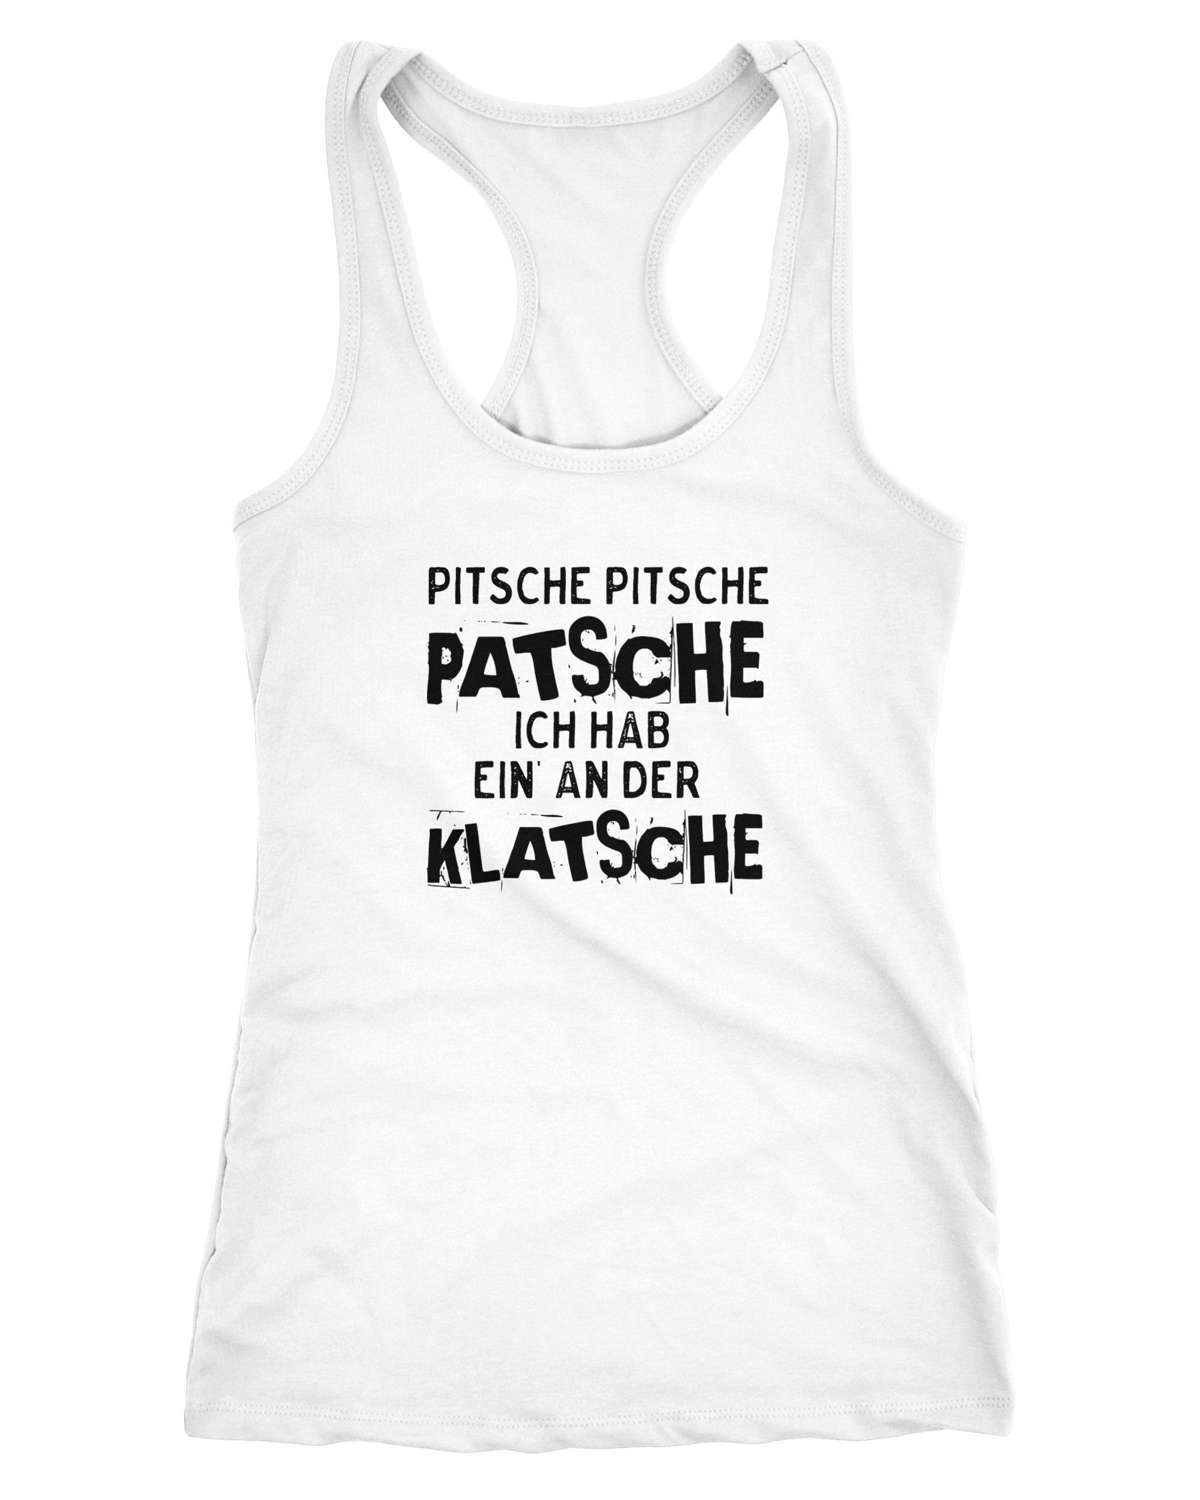 Майка женская безрукавка с надписью Pitsche Pitsche Patsche У меня есть одна на шлепке Racerback ®